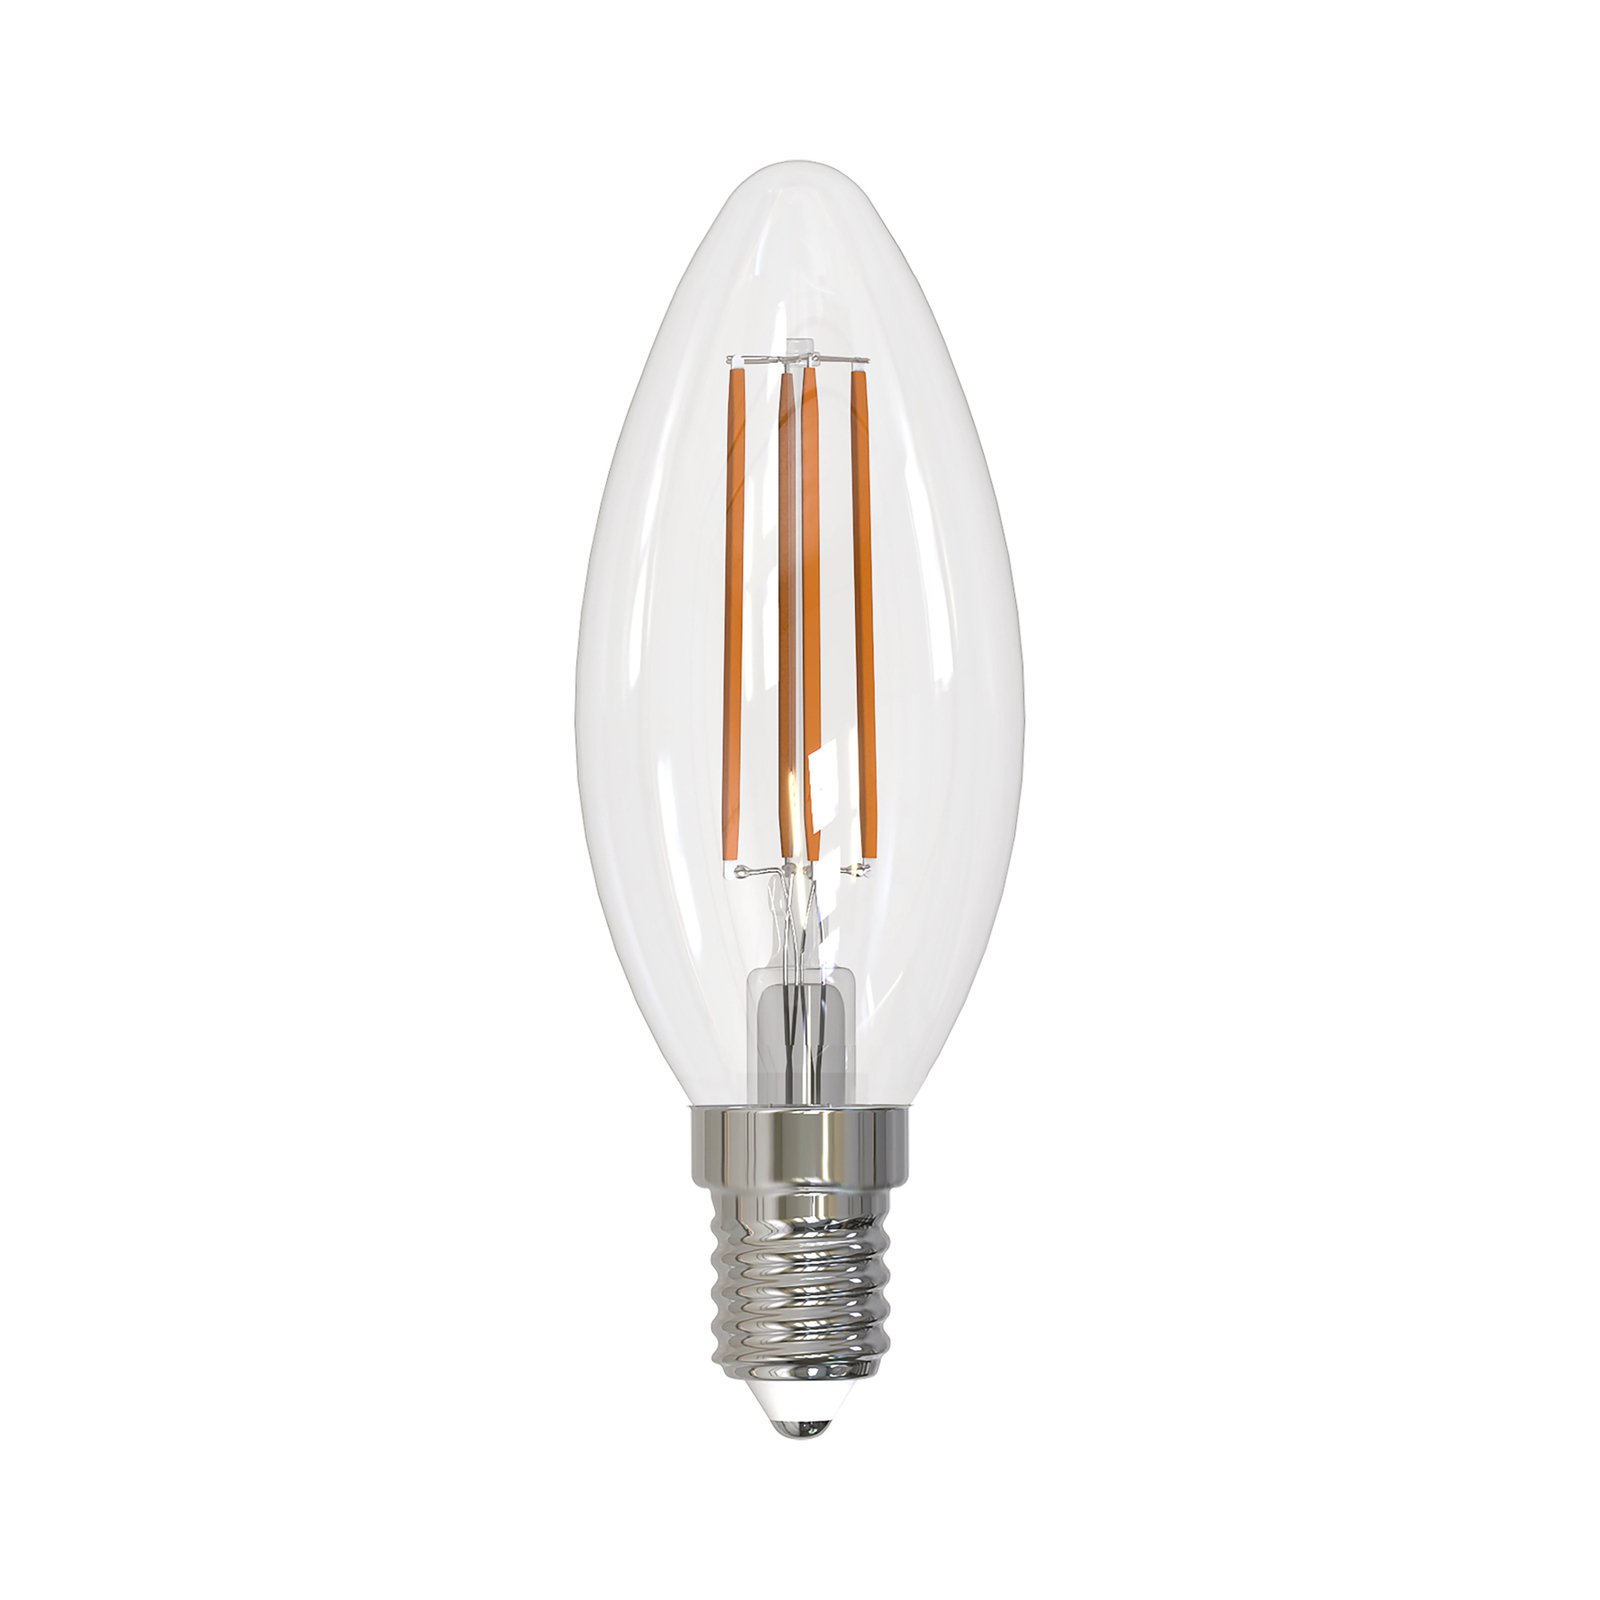 Arcchio LED-filamentlampa E14 ljus set om 10, 3000 K